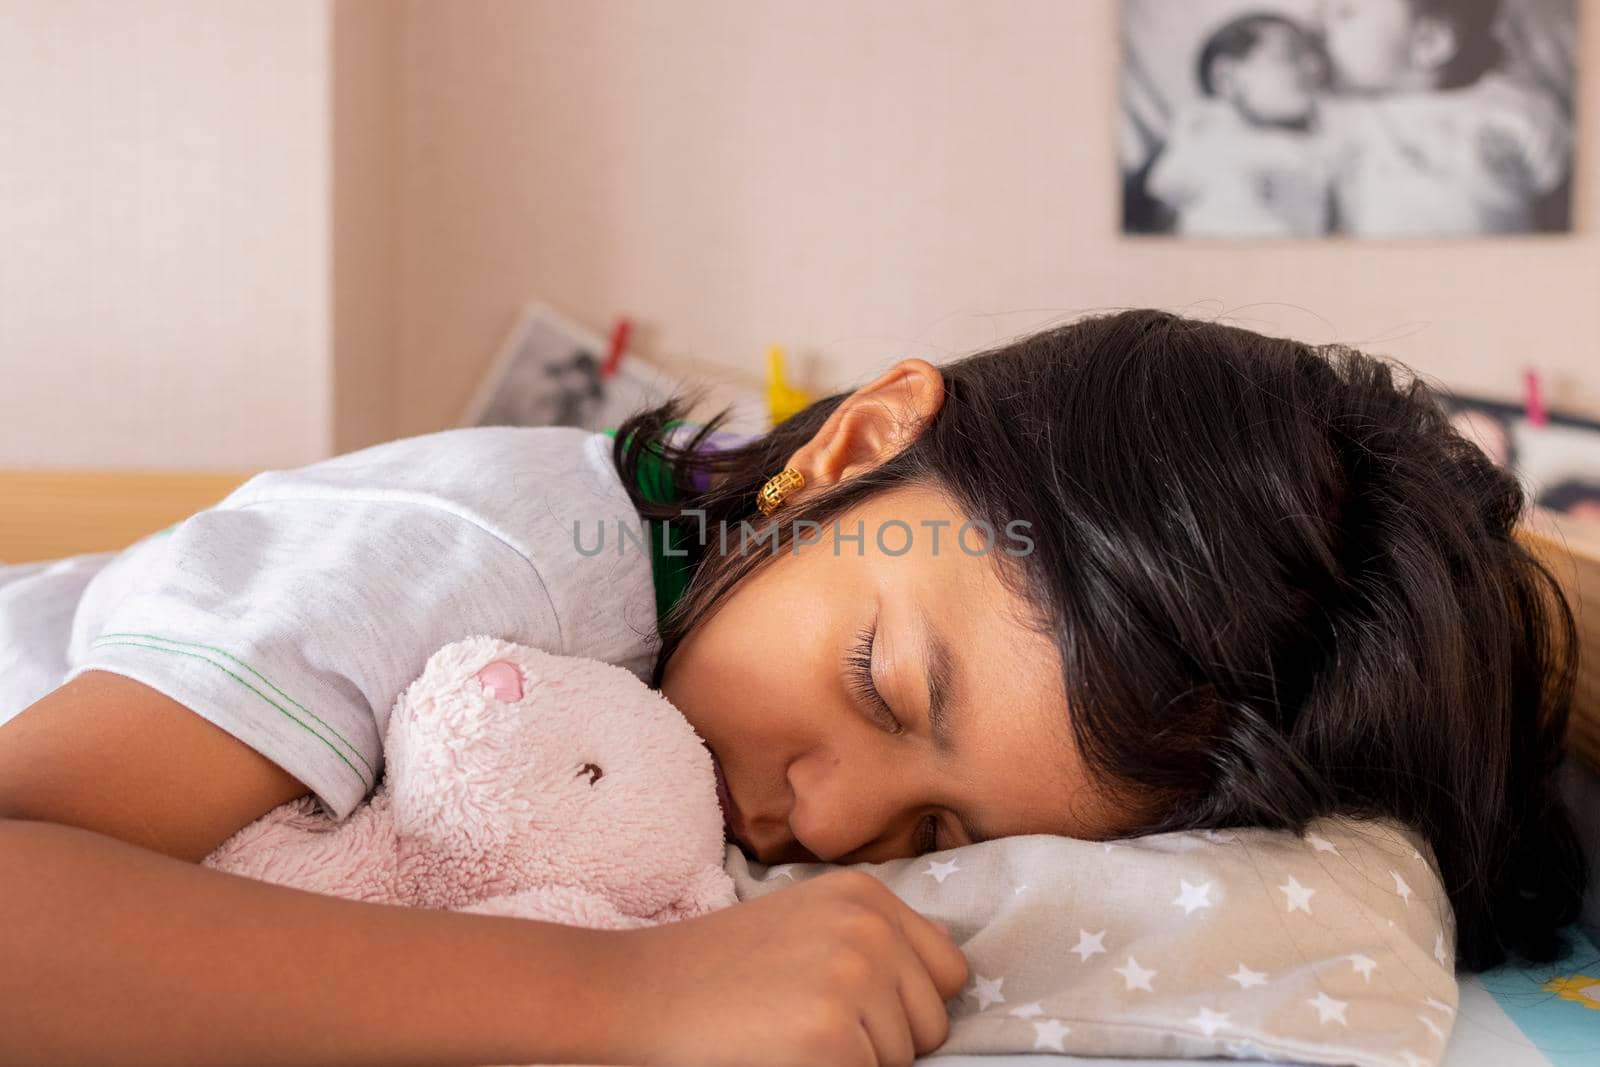 Little girl sleeping on her bed inside her room